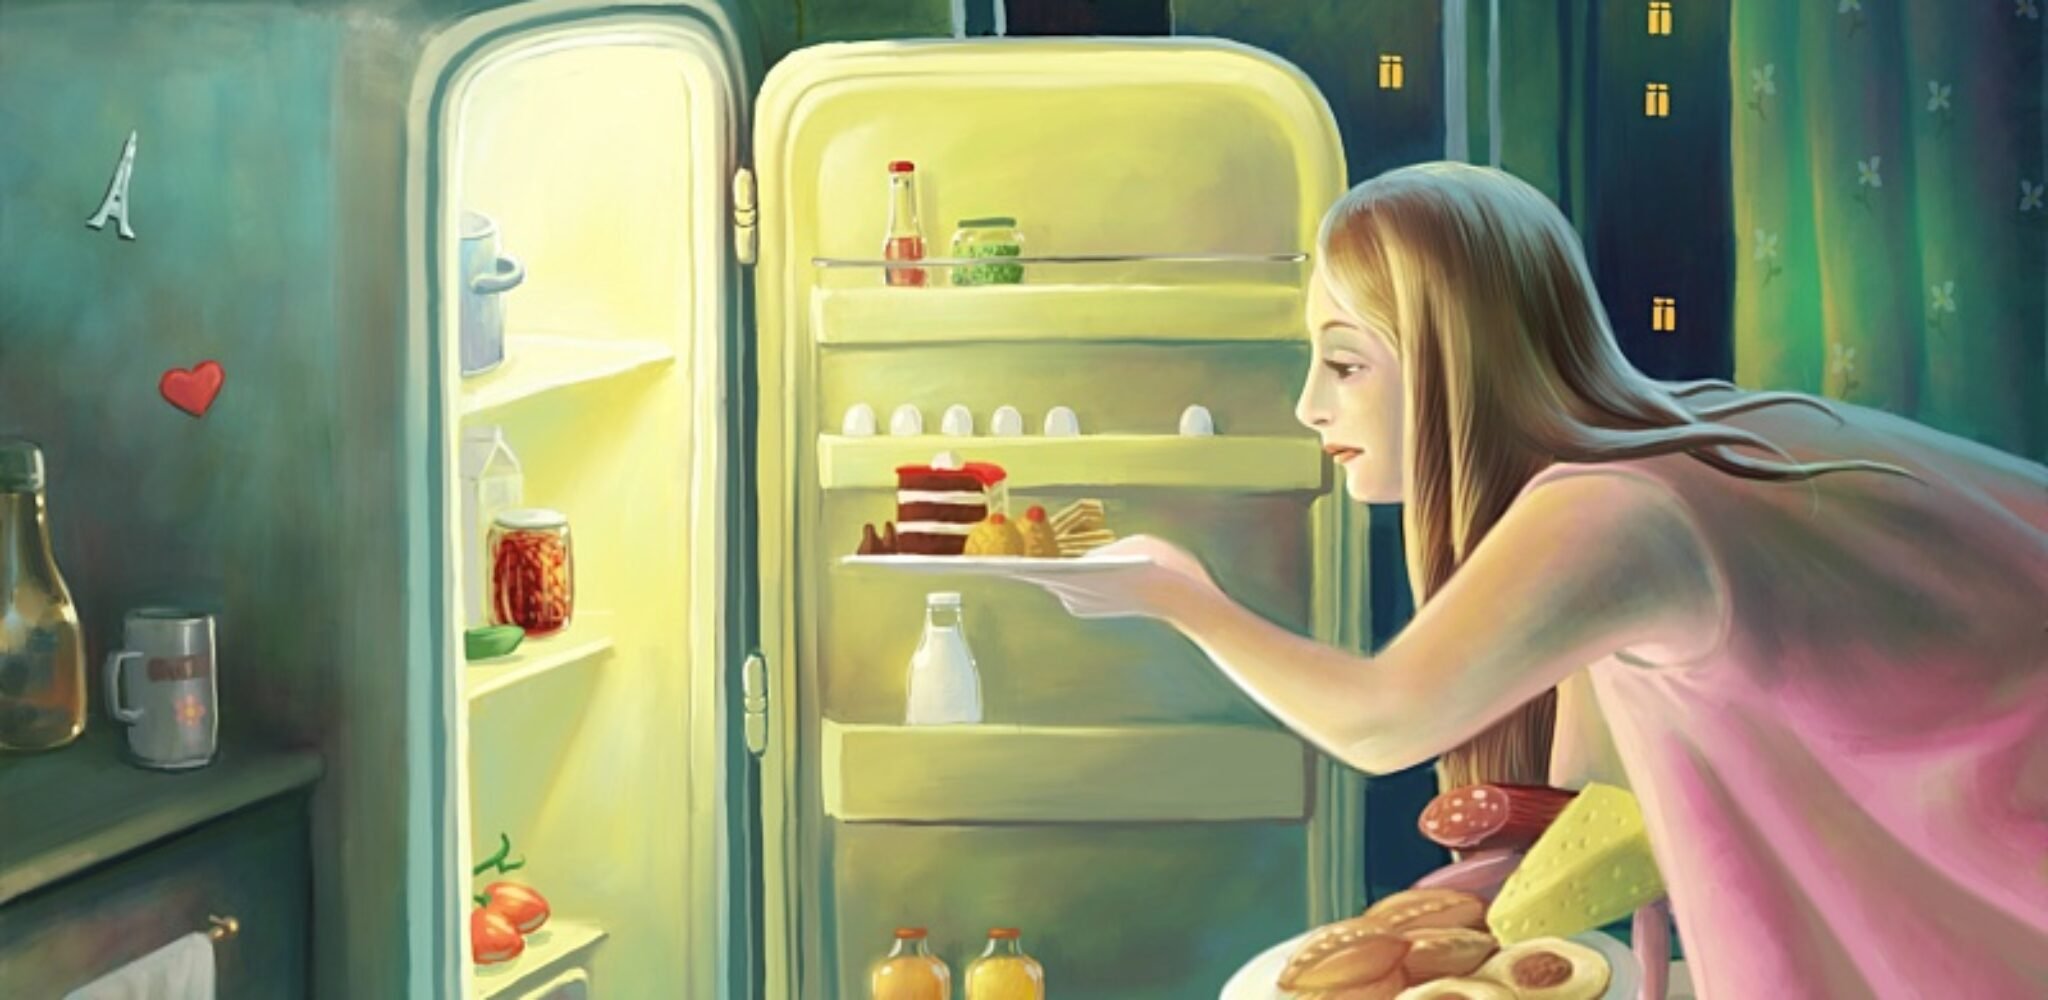 Картинки на холодильник